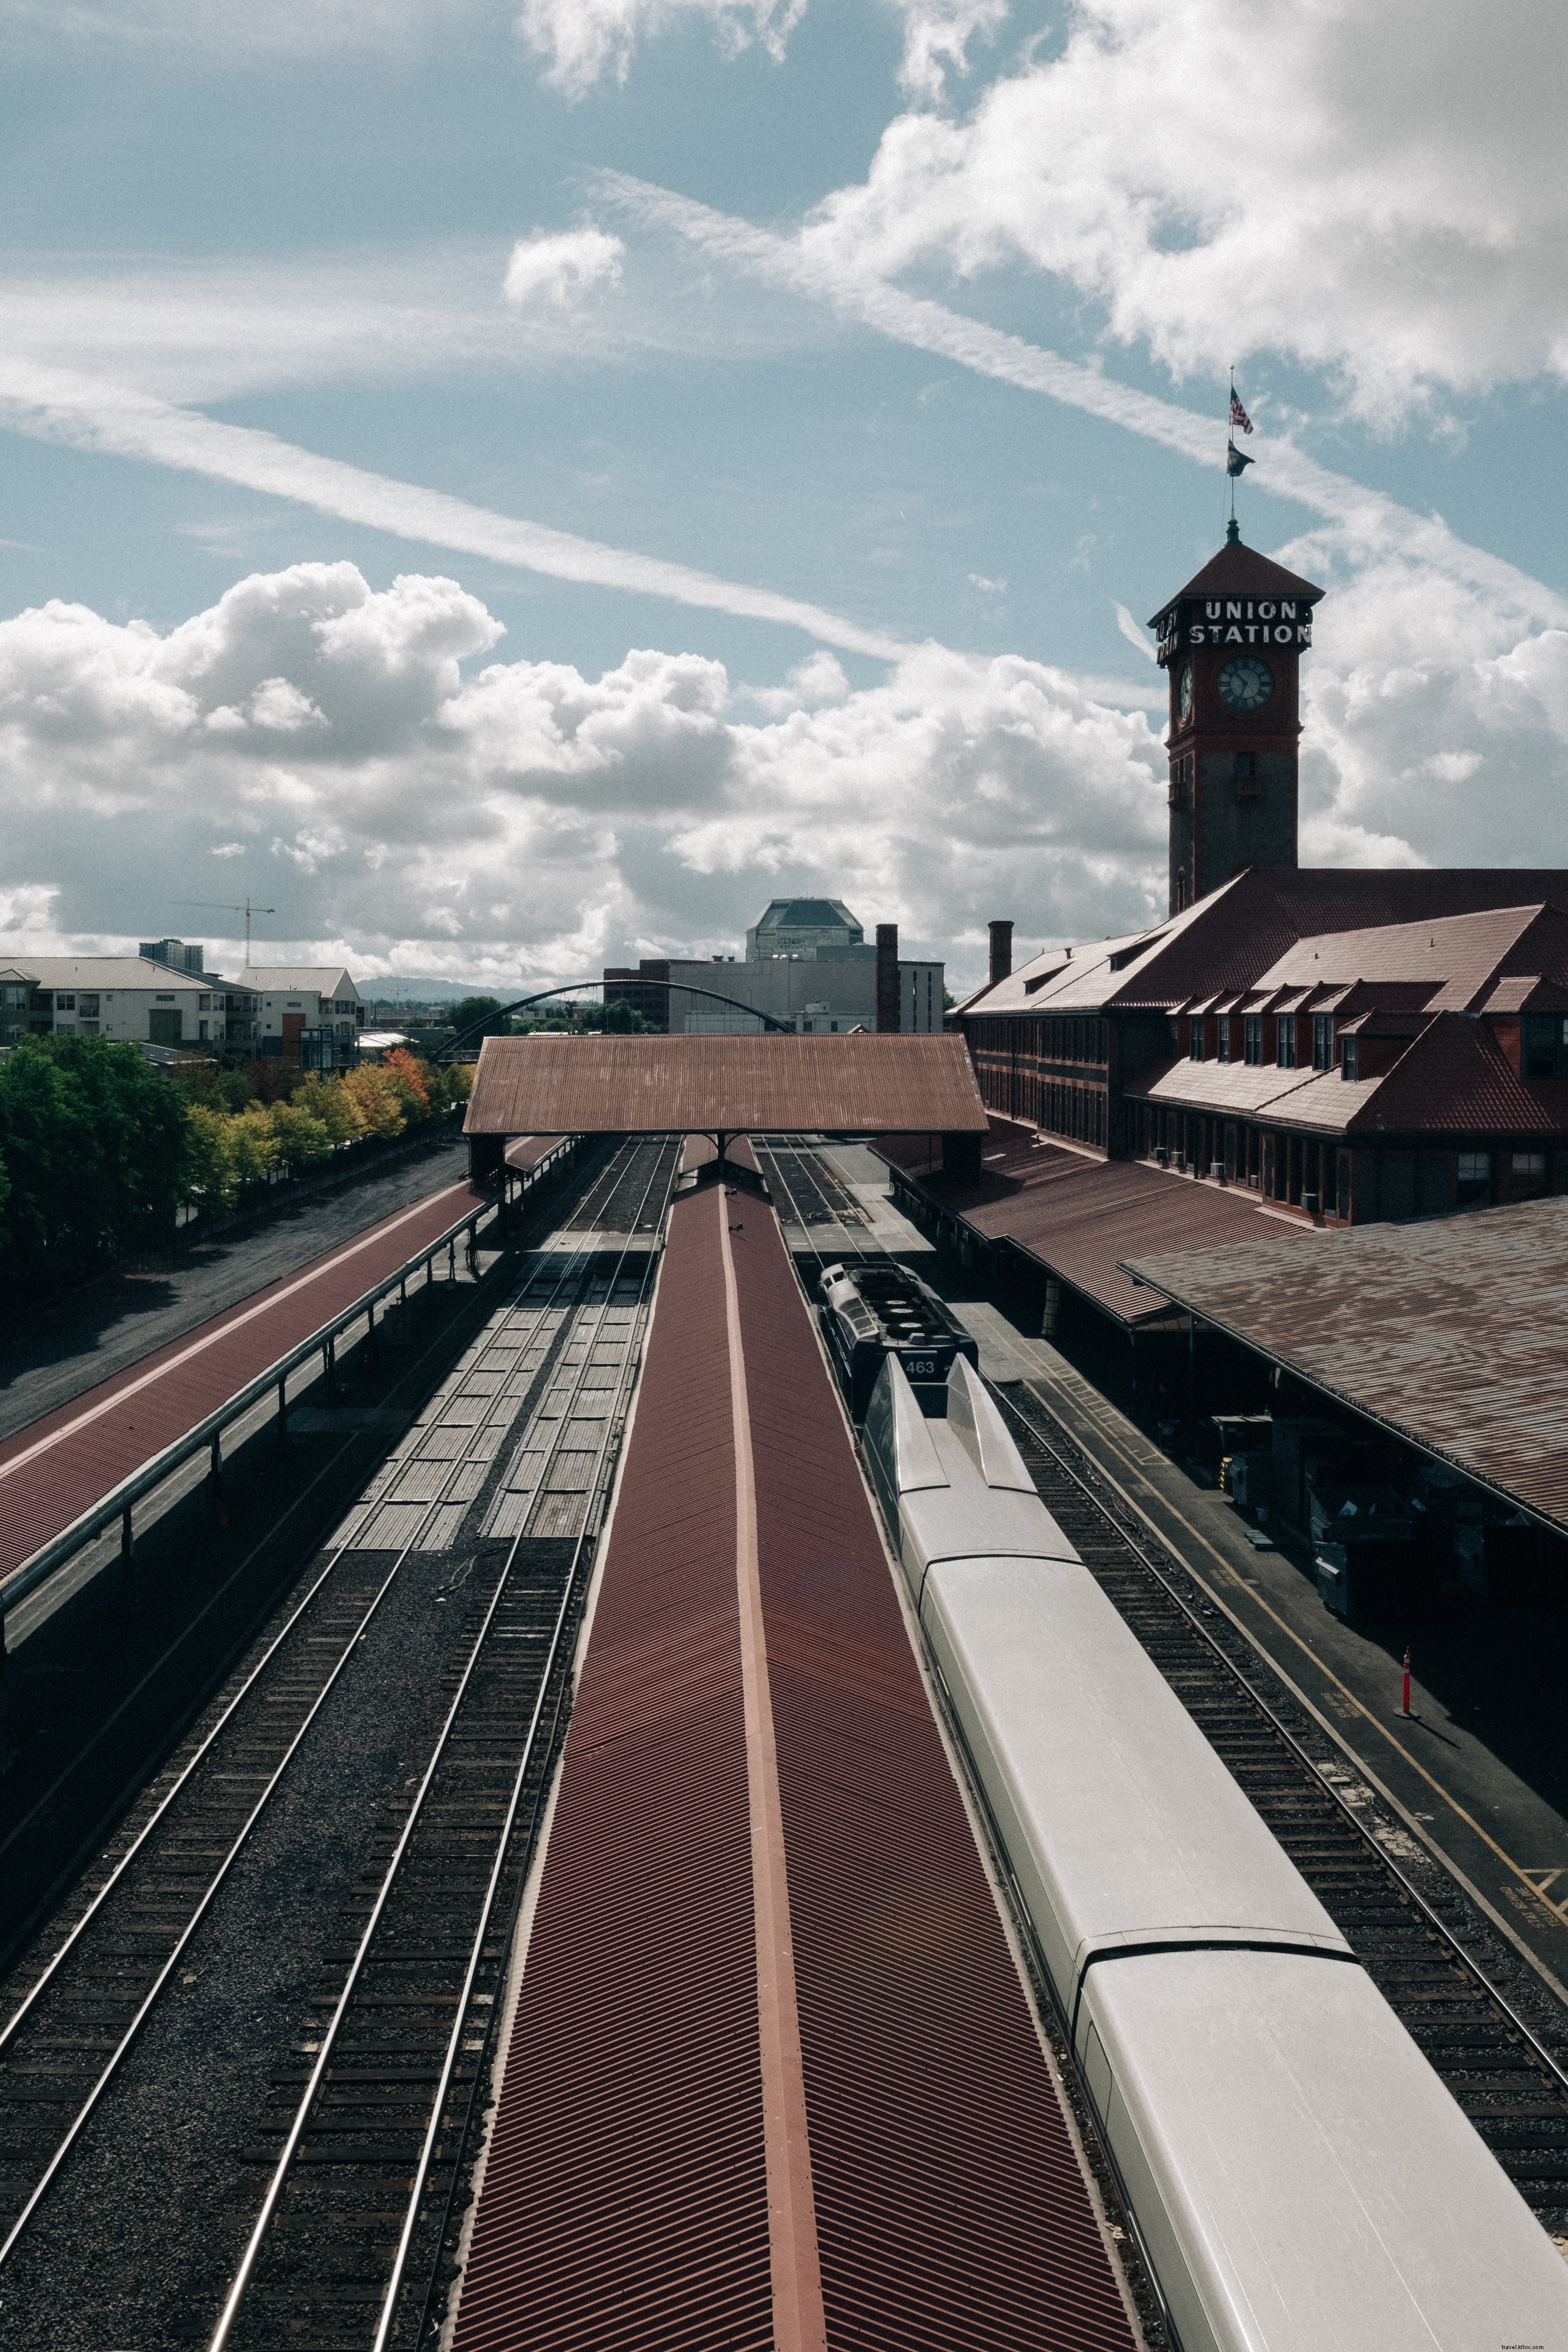 Foto dos trilhos e plataformas da estação ferroviária